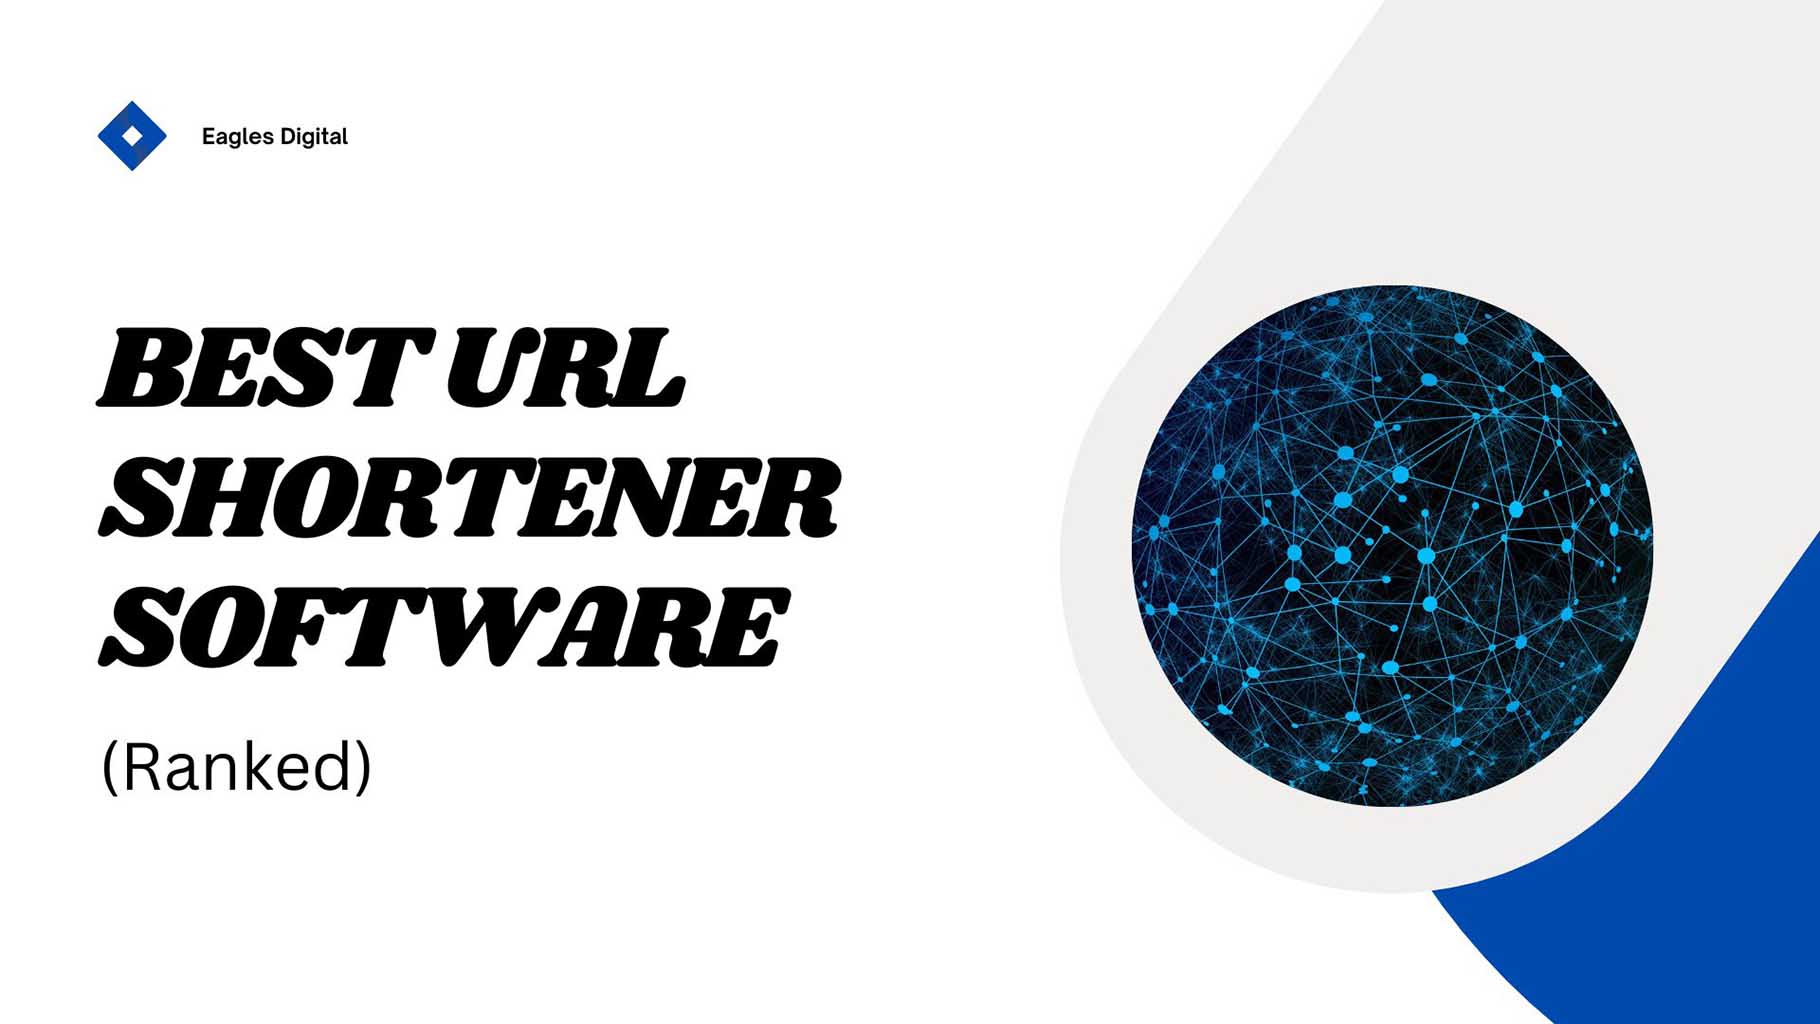 Best URL shortener software